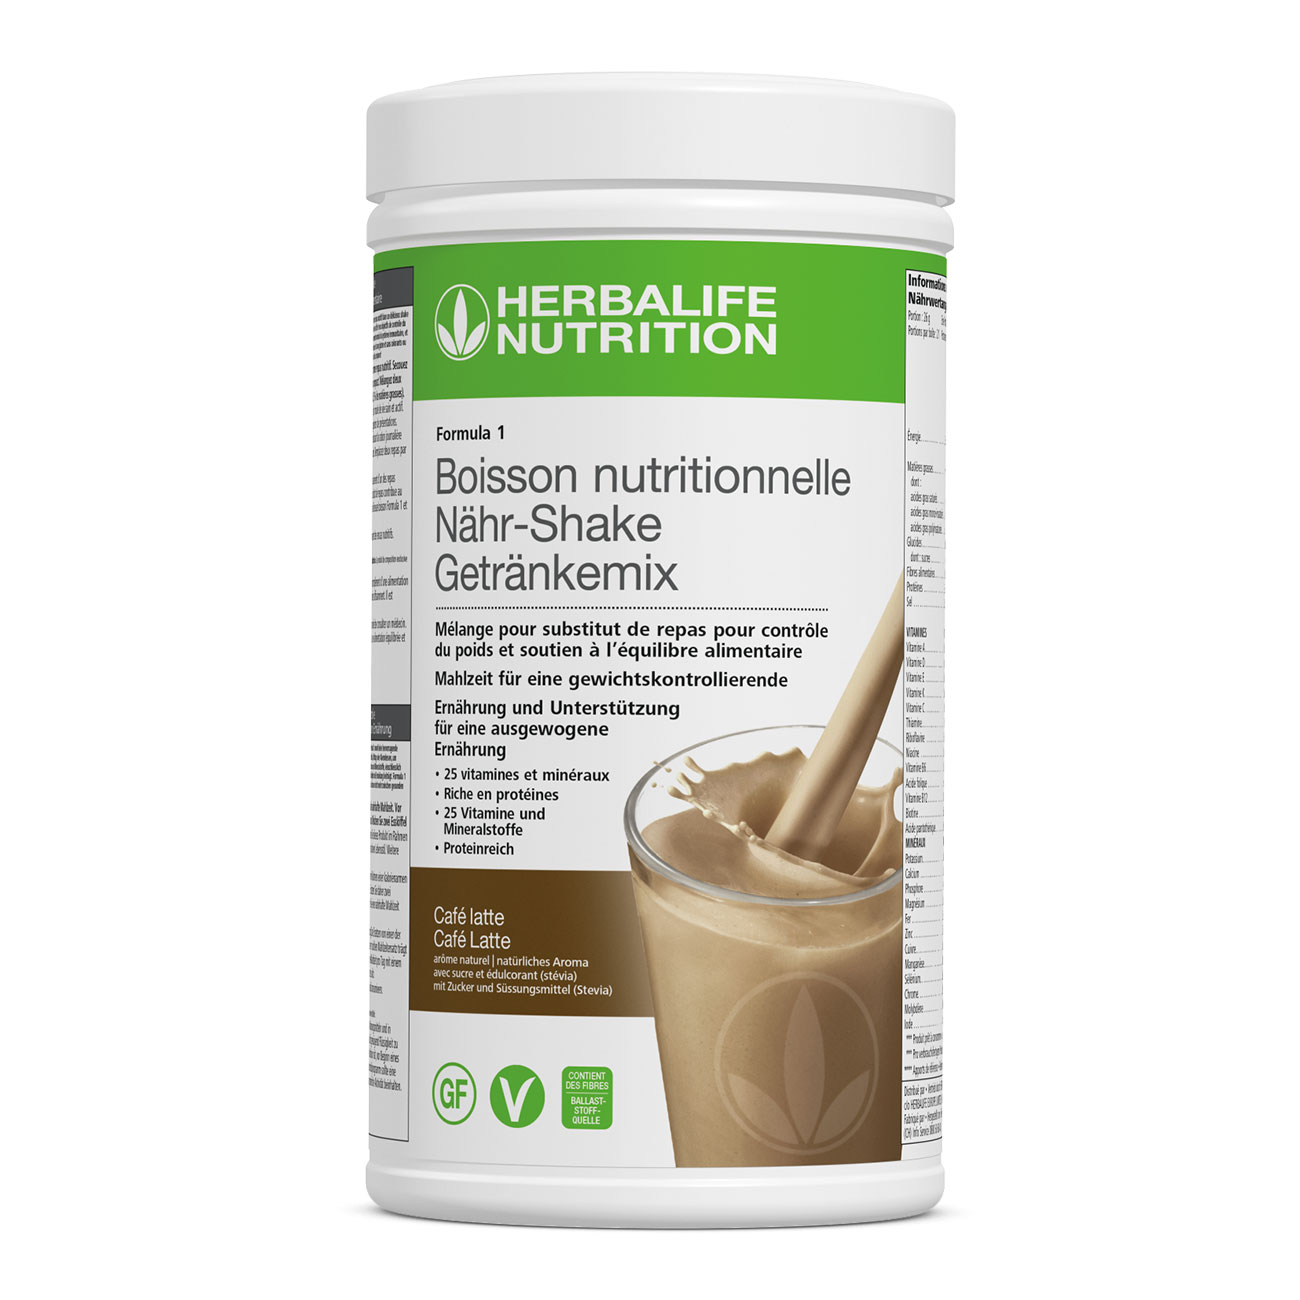 Formula 1 Cafe latte – un shake de substitut de repas riche en proteines pour le controle de poids. Ingredients vegan et sans gluten. Un repas complet.